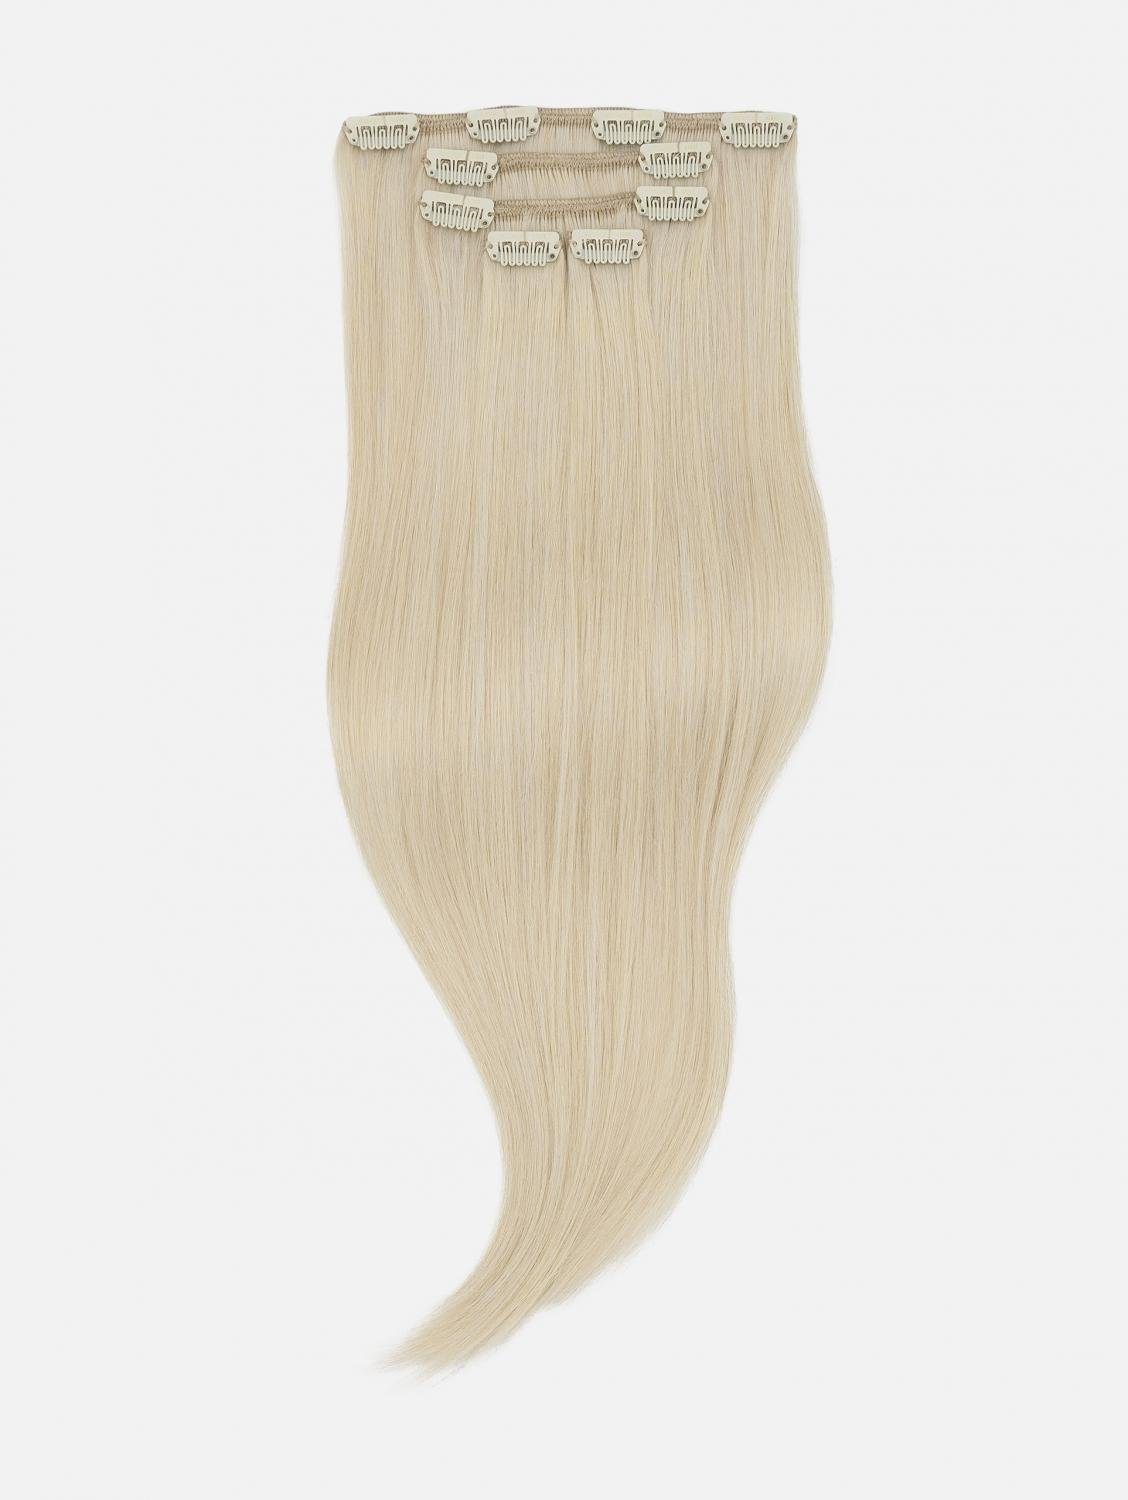 NATURAL Seidenglatt 40cm, #60S Clip-In Echthaar-Extension 50cm, Echthaar - (Silver Extensions EH Blonde) Echthaar 5-teilig Haarverlängerung -